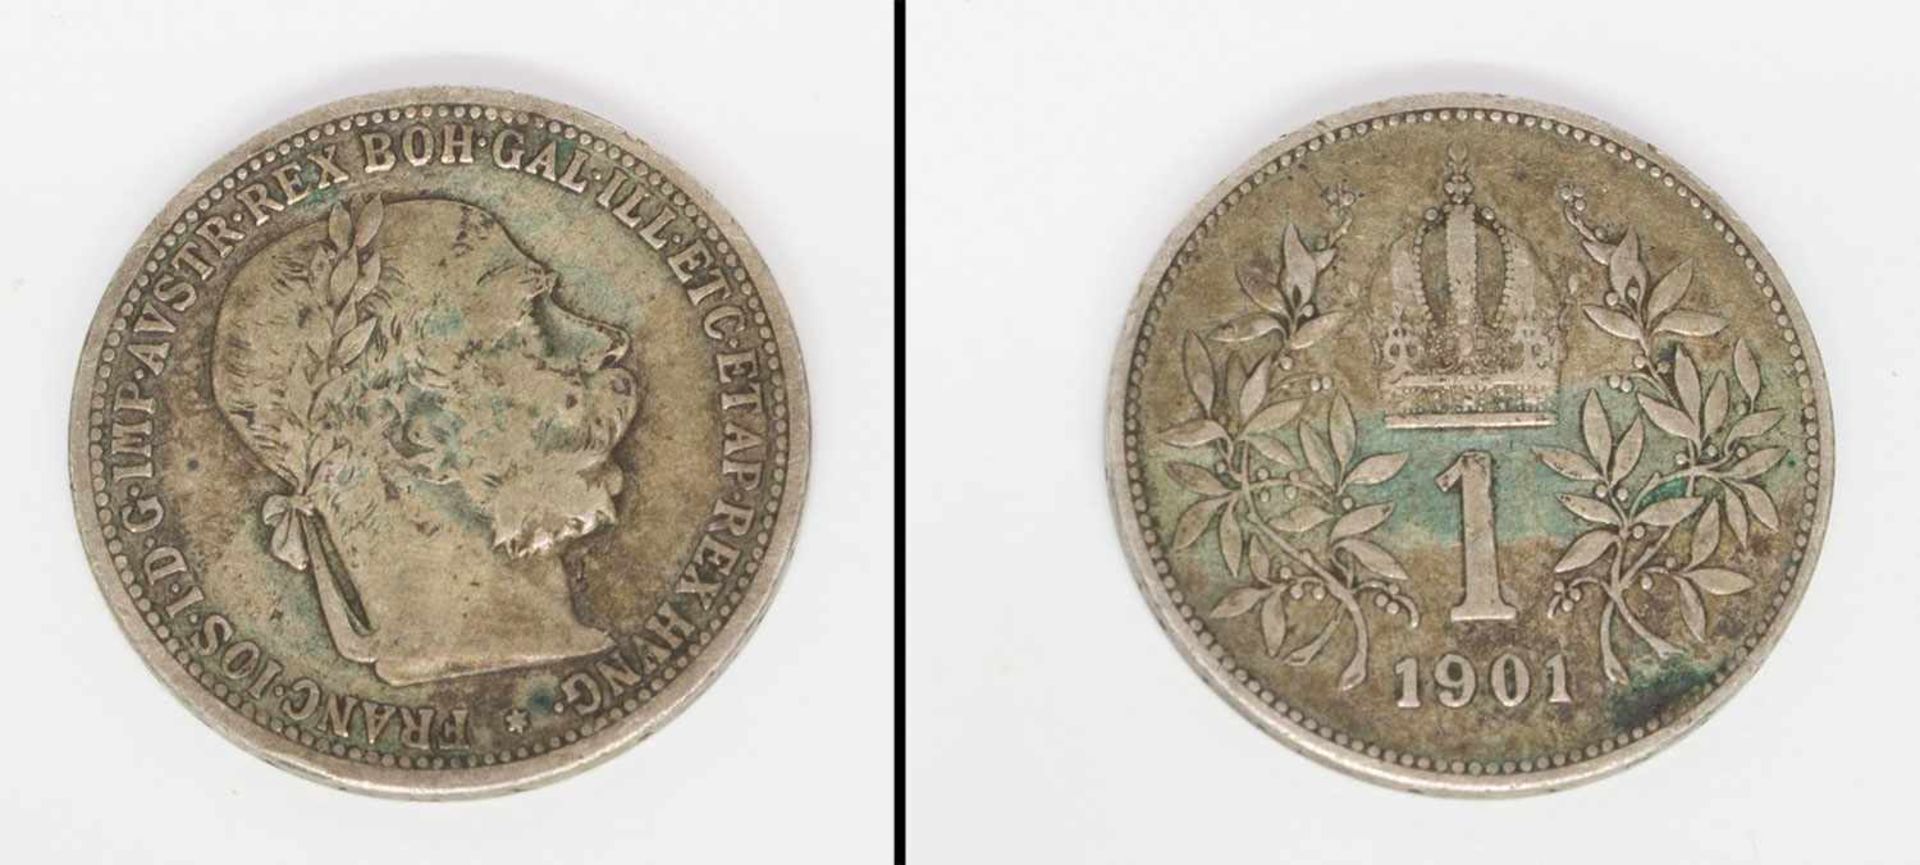 1 KroneÖsterreich 1901, Franz Joseph, Silber, ss